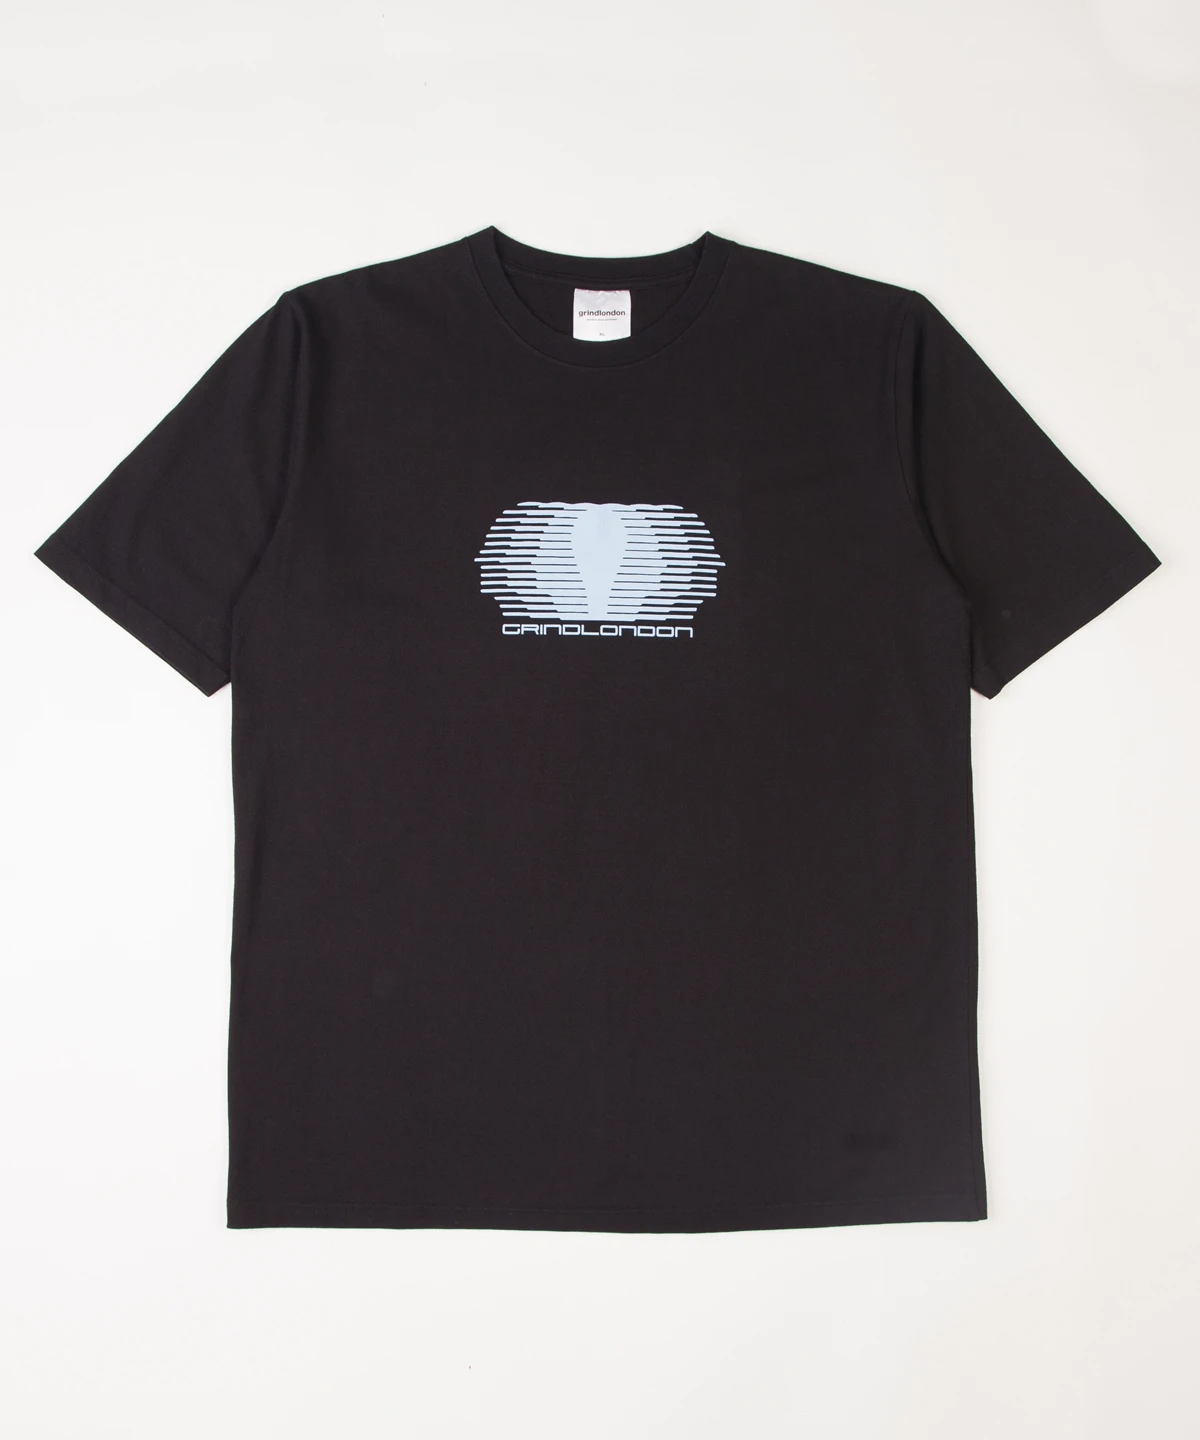 grindlondon movements 100% cotton y2k t-shirt black.